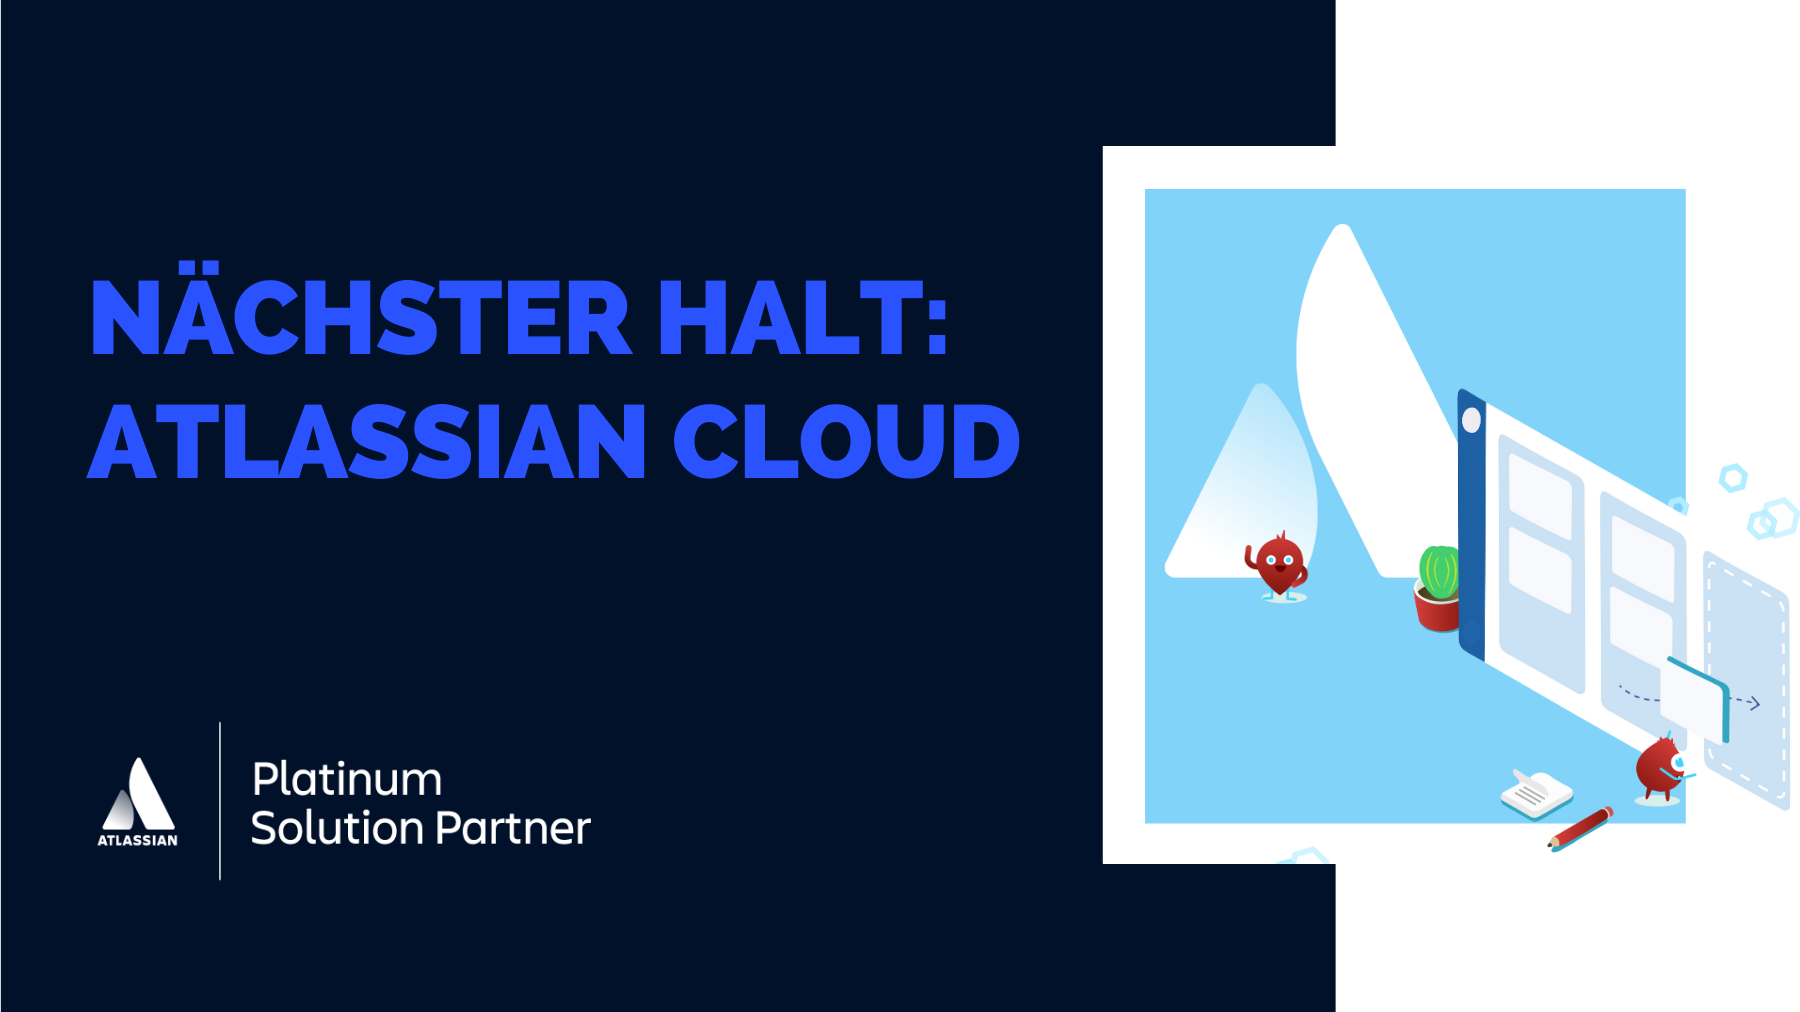 Nächster Halt: Atlassian Cloud